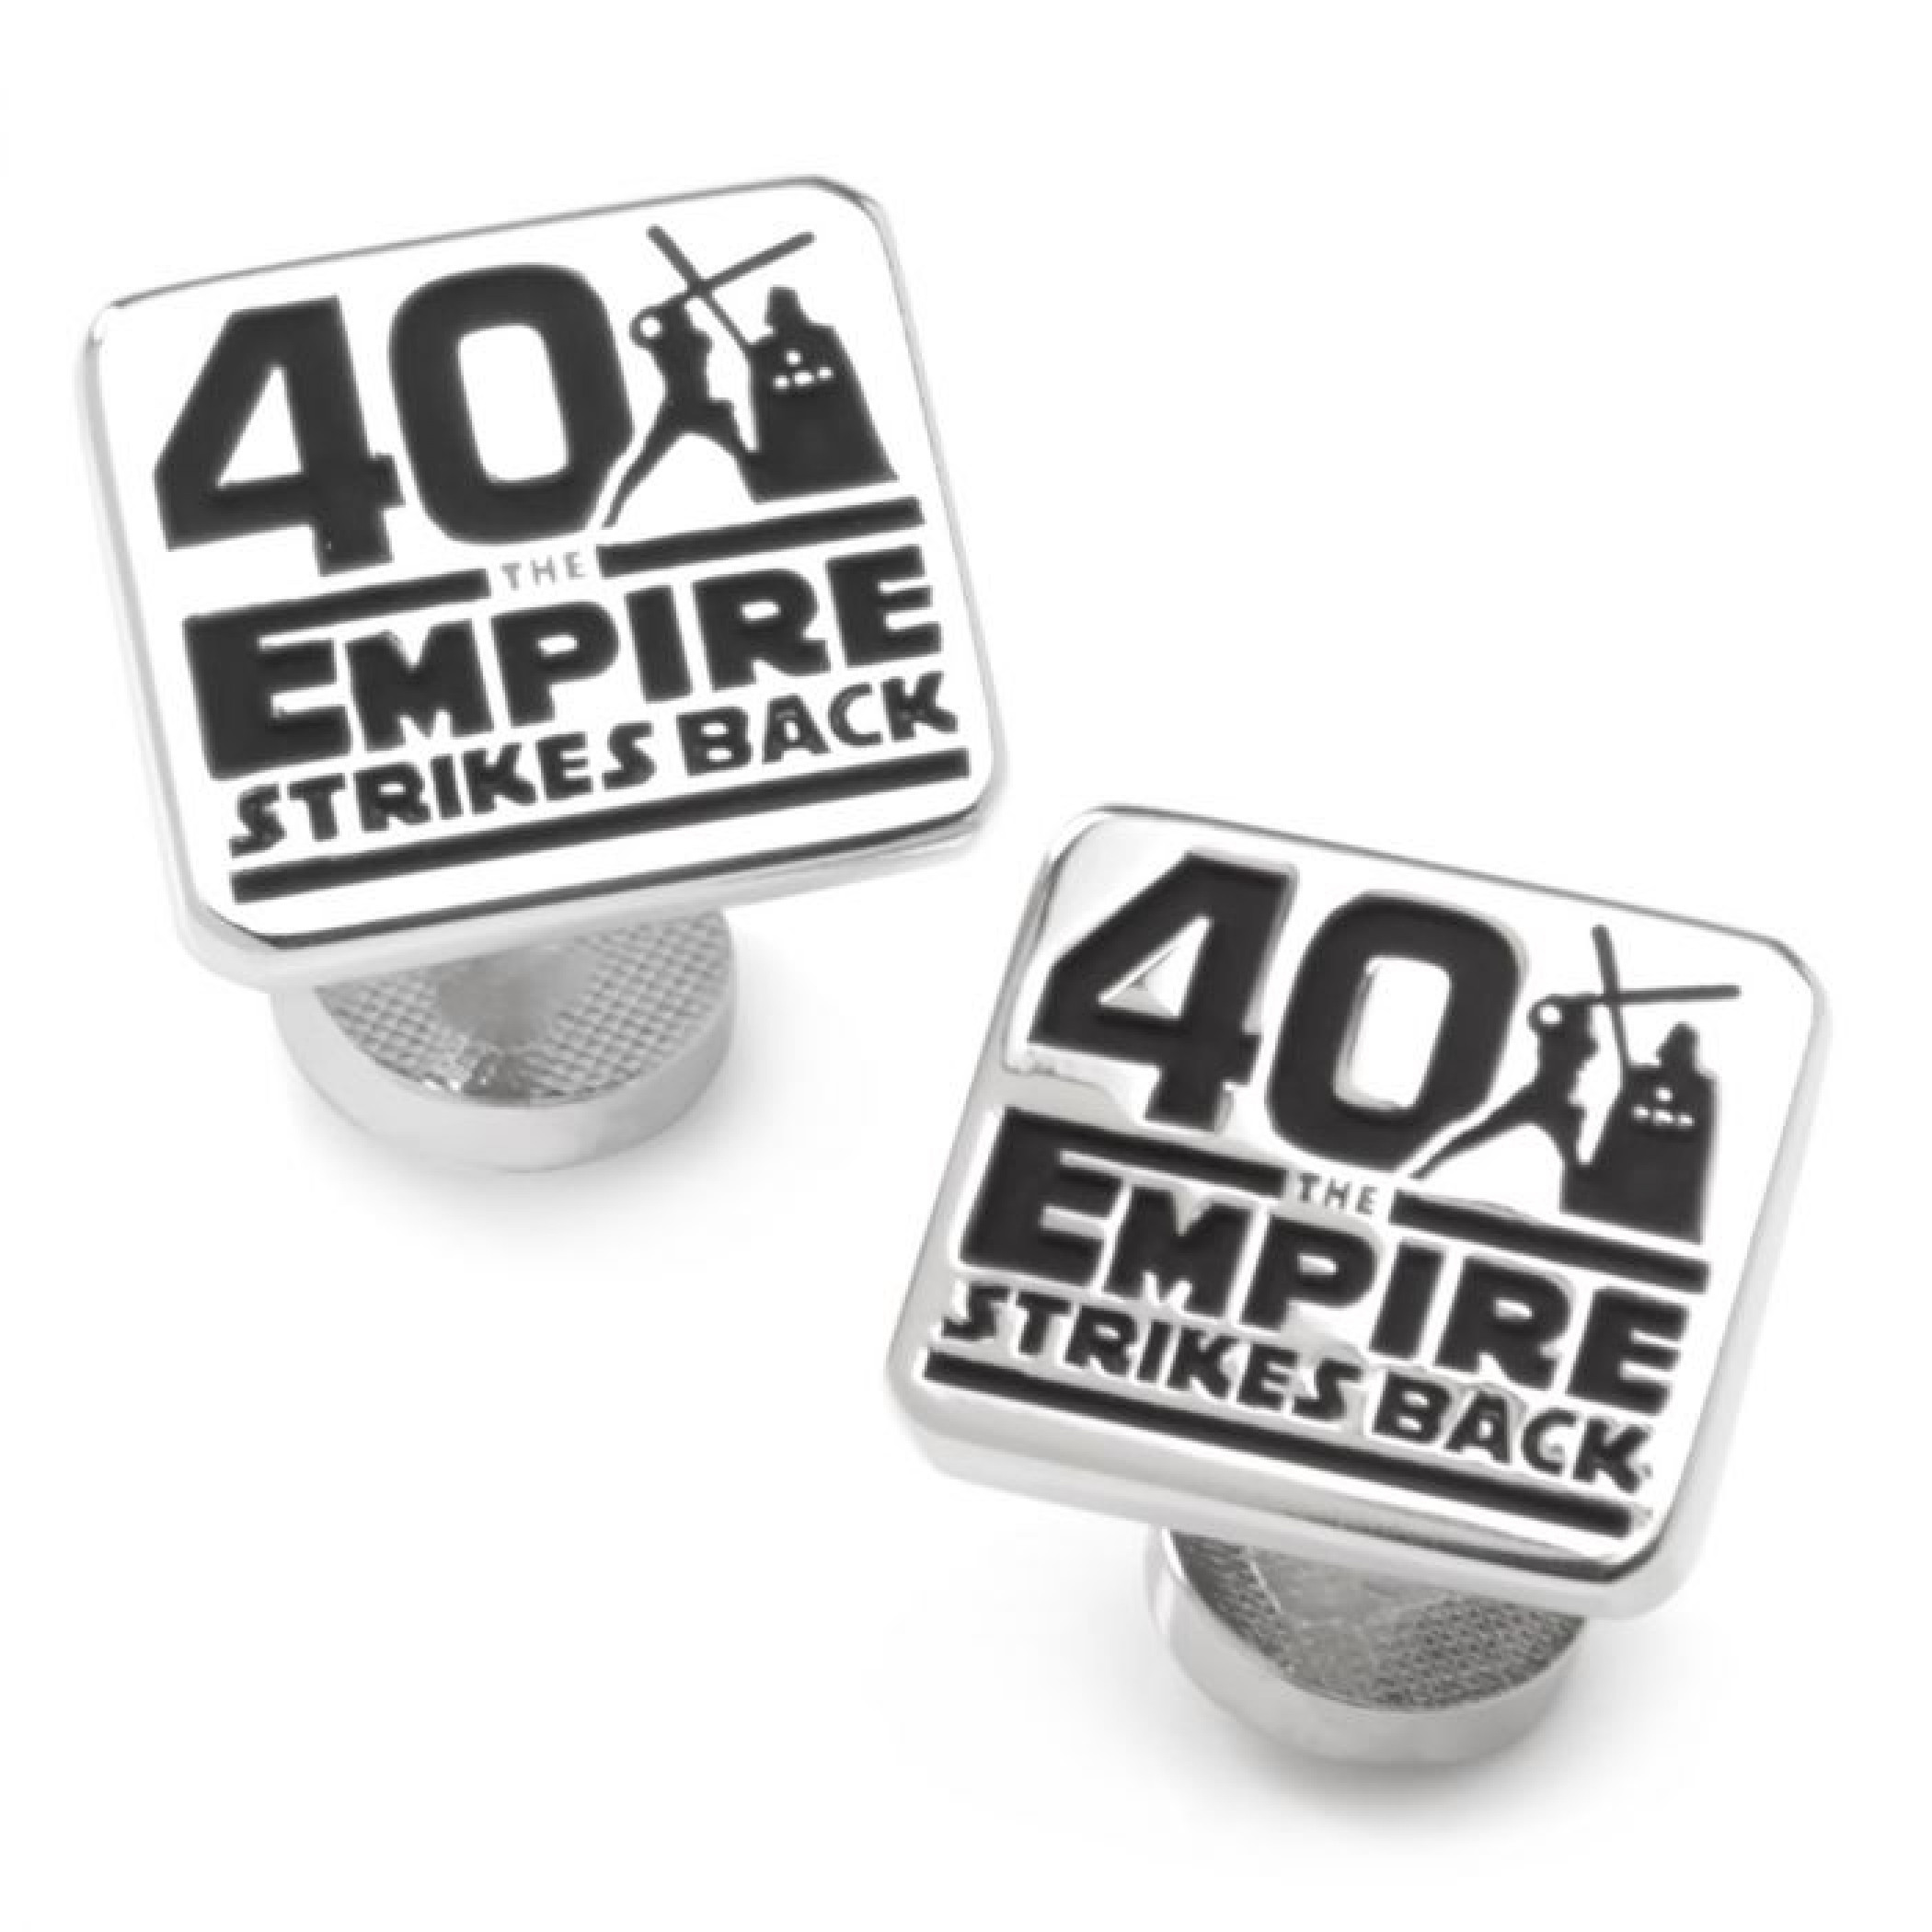 Star Wars Empire Strikes Back Anniversary Cufflink